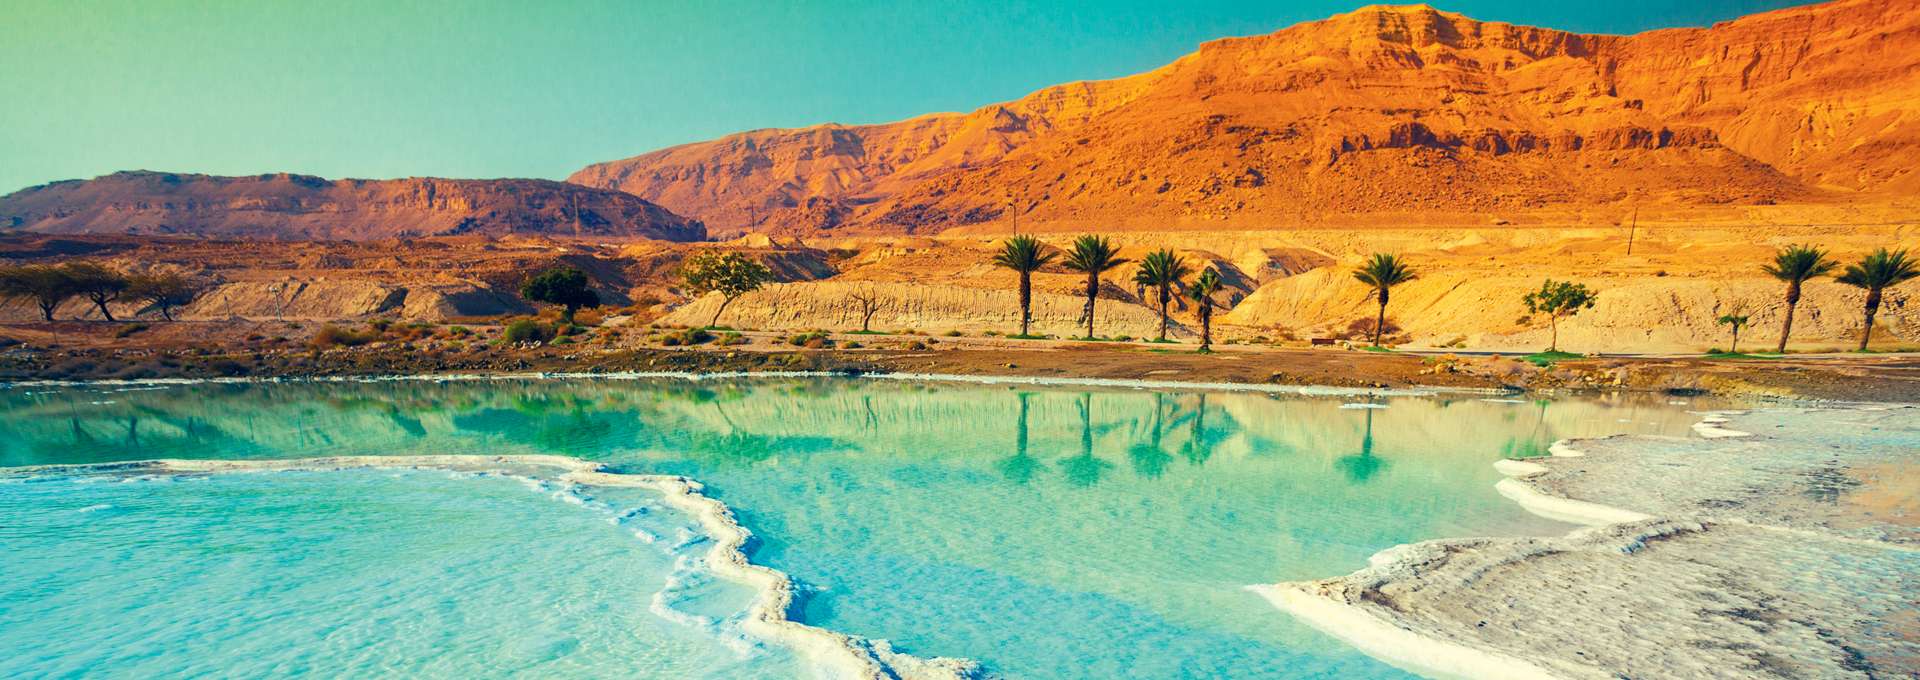 Jordania Mar Muerto